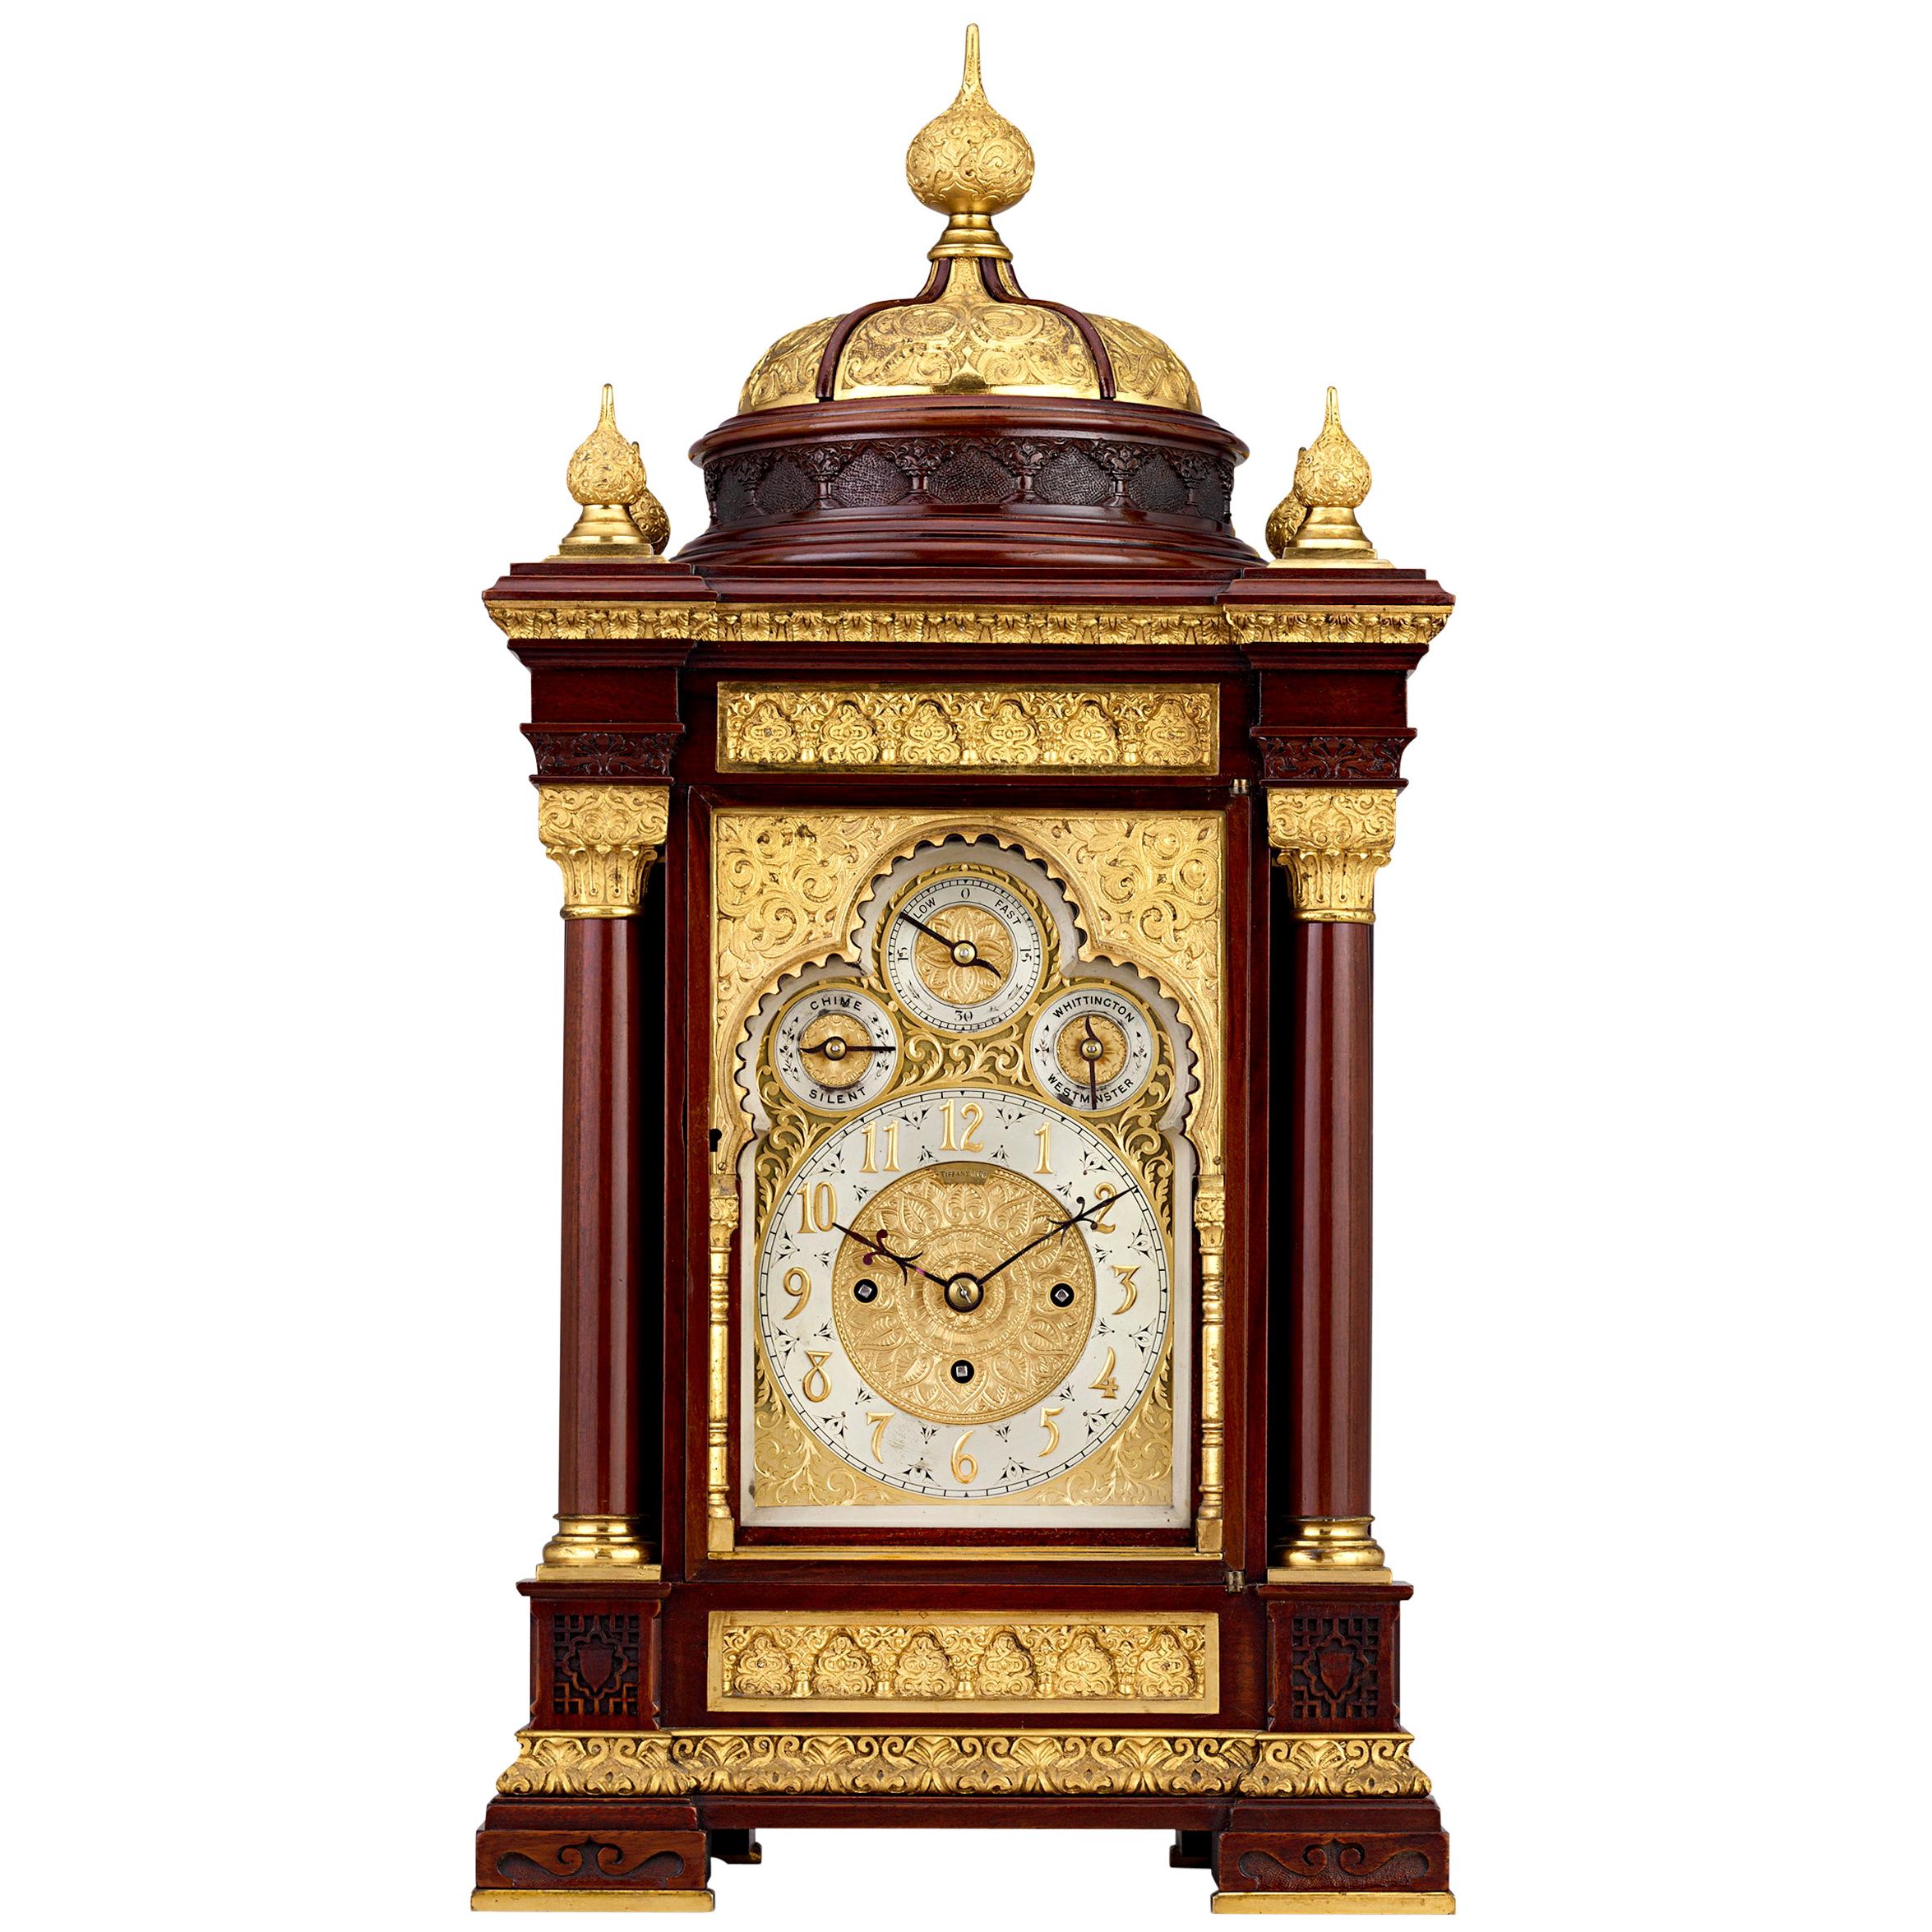 Moorish Mantel Clock by Tiffany & Co.